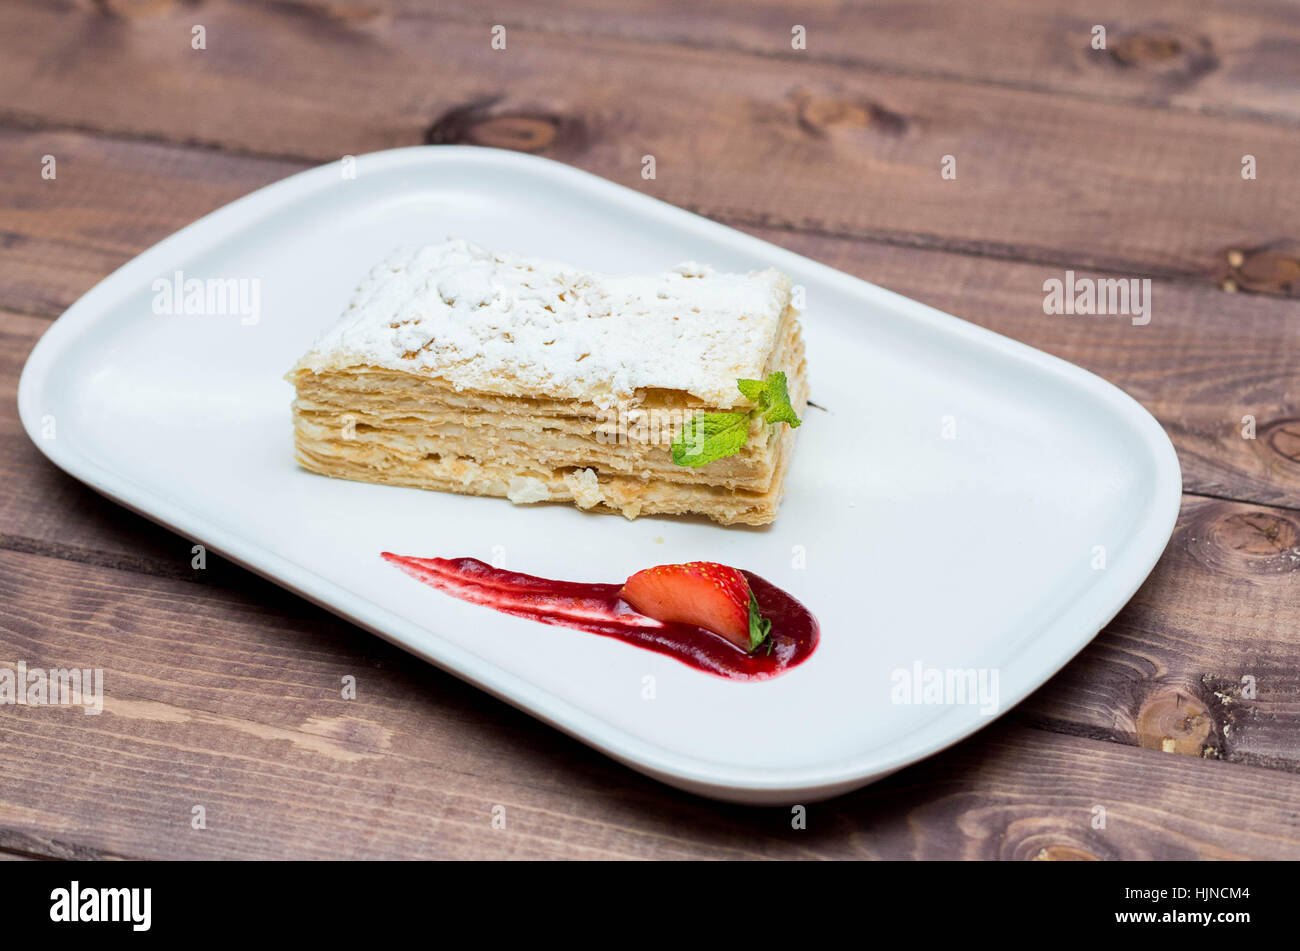 Bella e deliziosi dessert millefoglie con frutti di bosco su una piastra bianca con salsa, bellissimo ristorante offerta Foto Stock